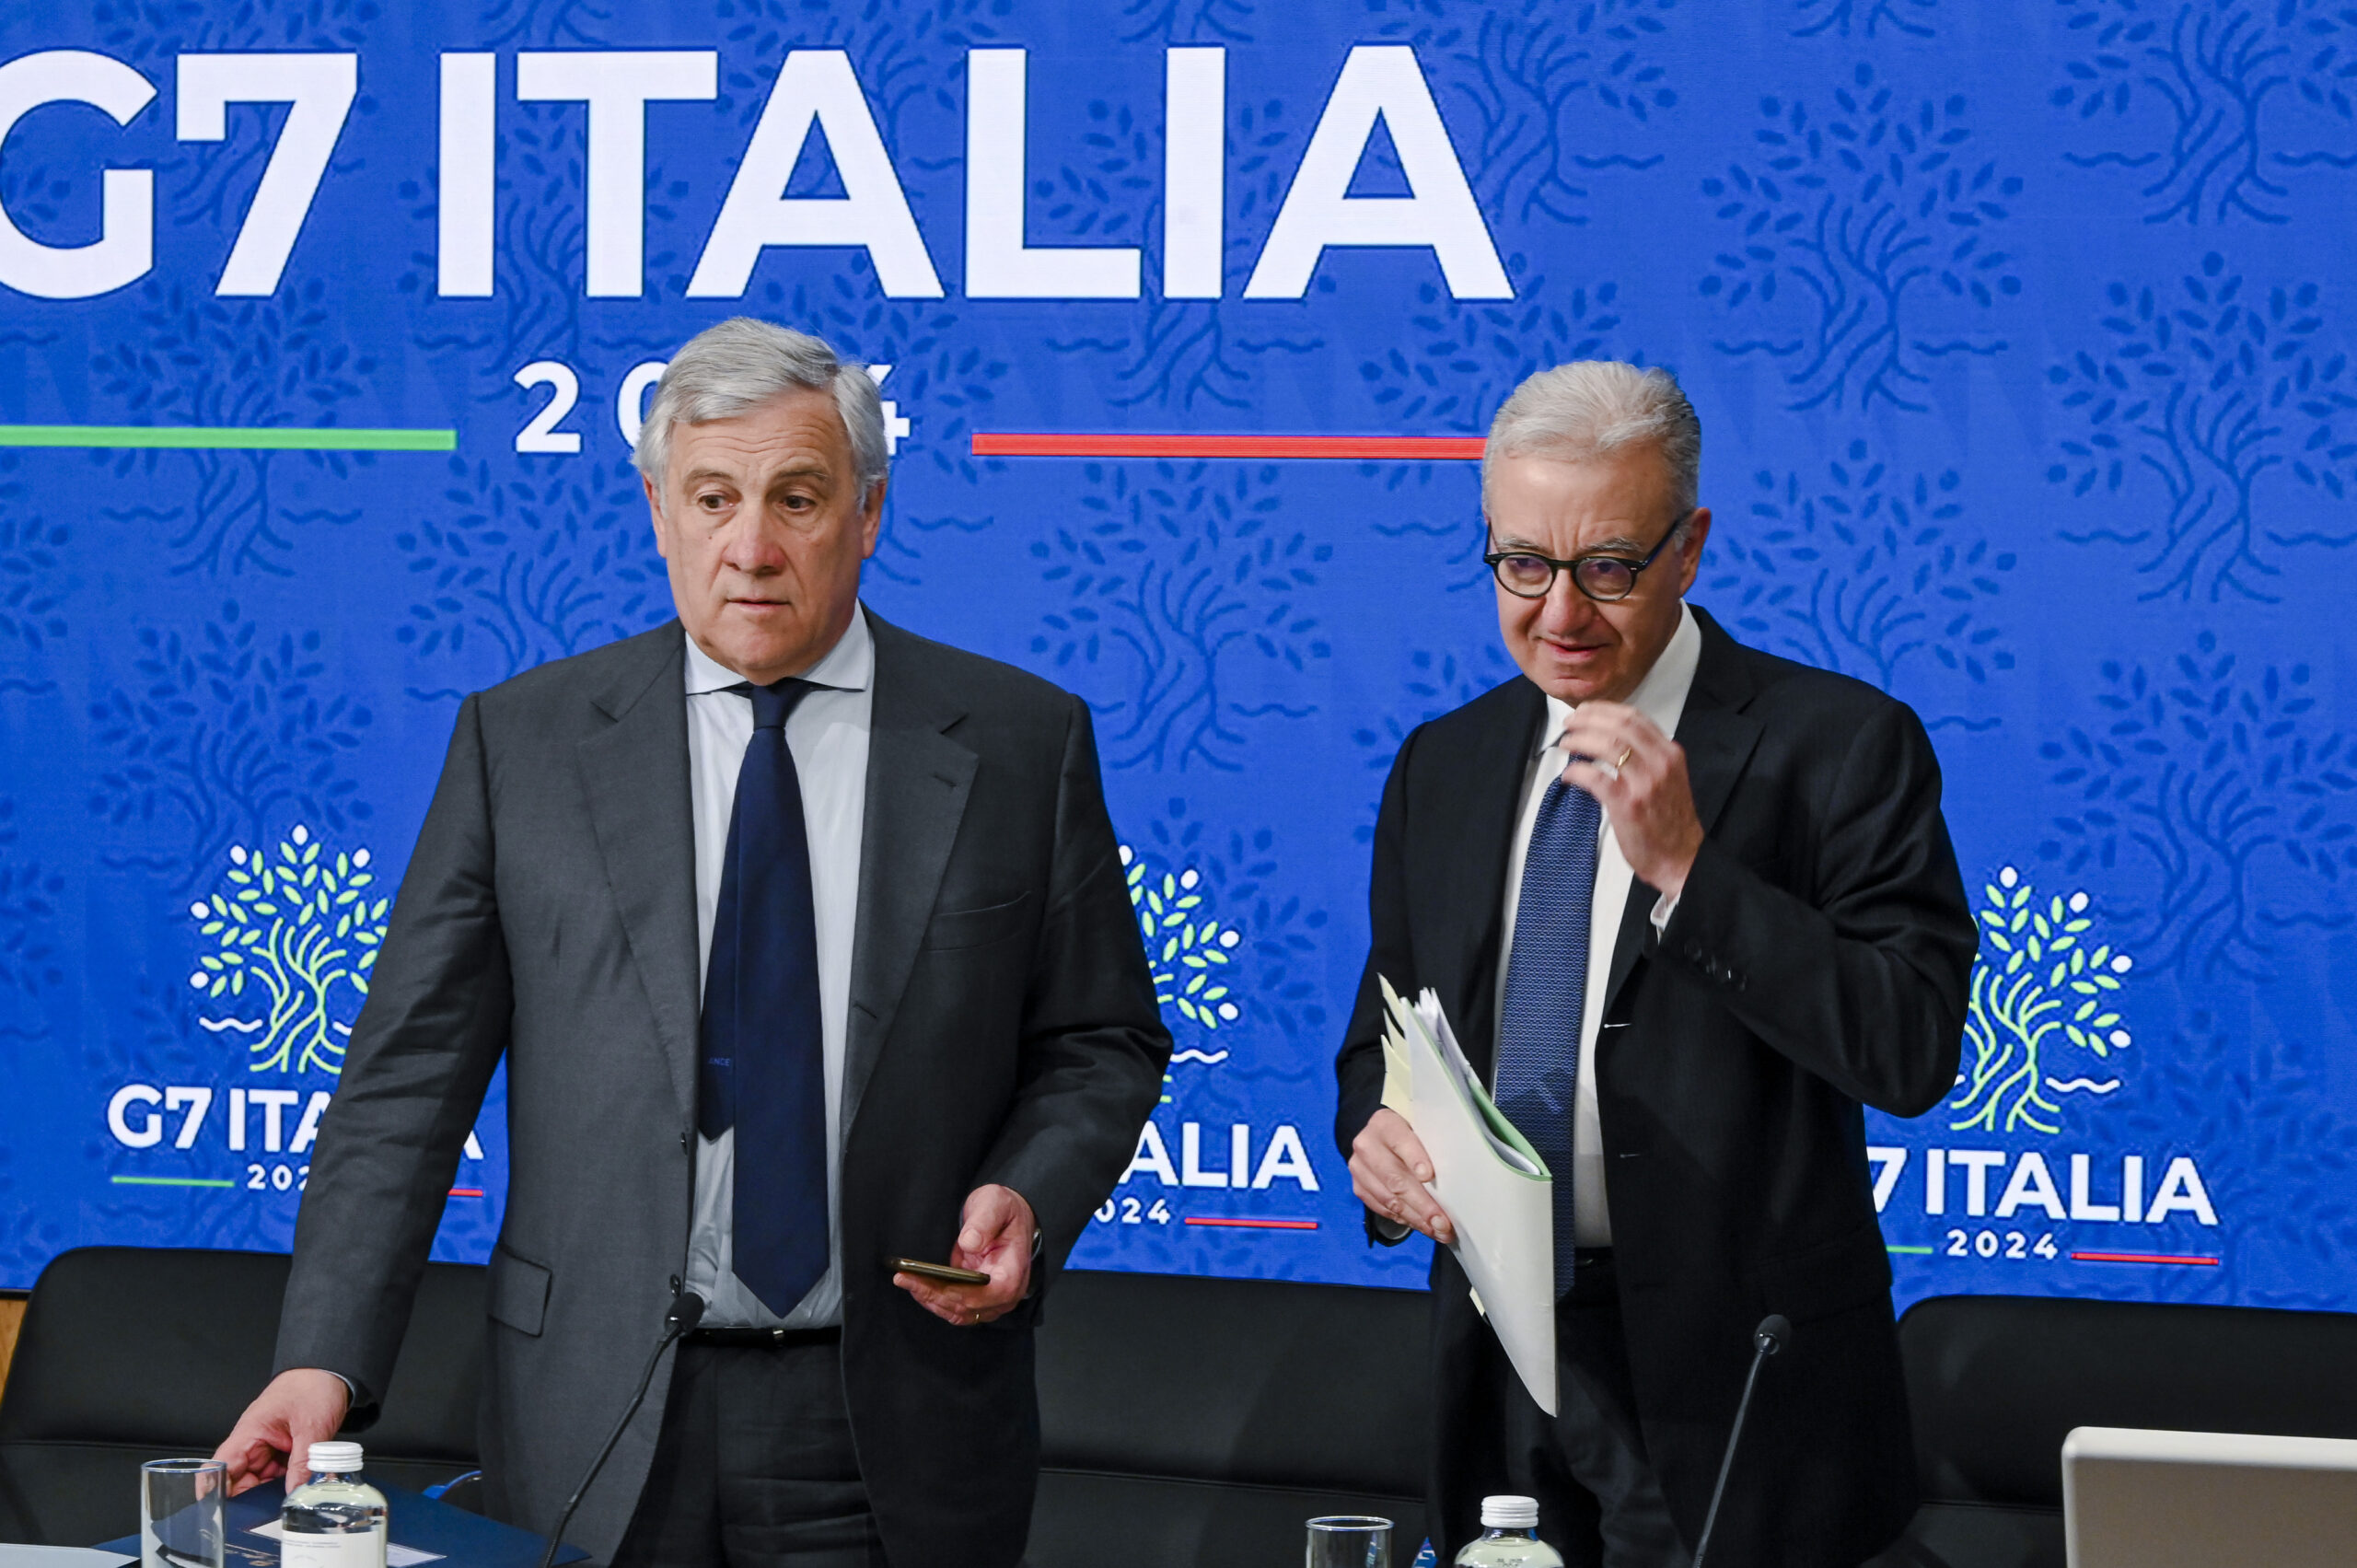 Contro il fentanyl, una battaglia globale. Le parole di Tajani e Mantovano